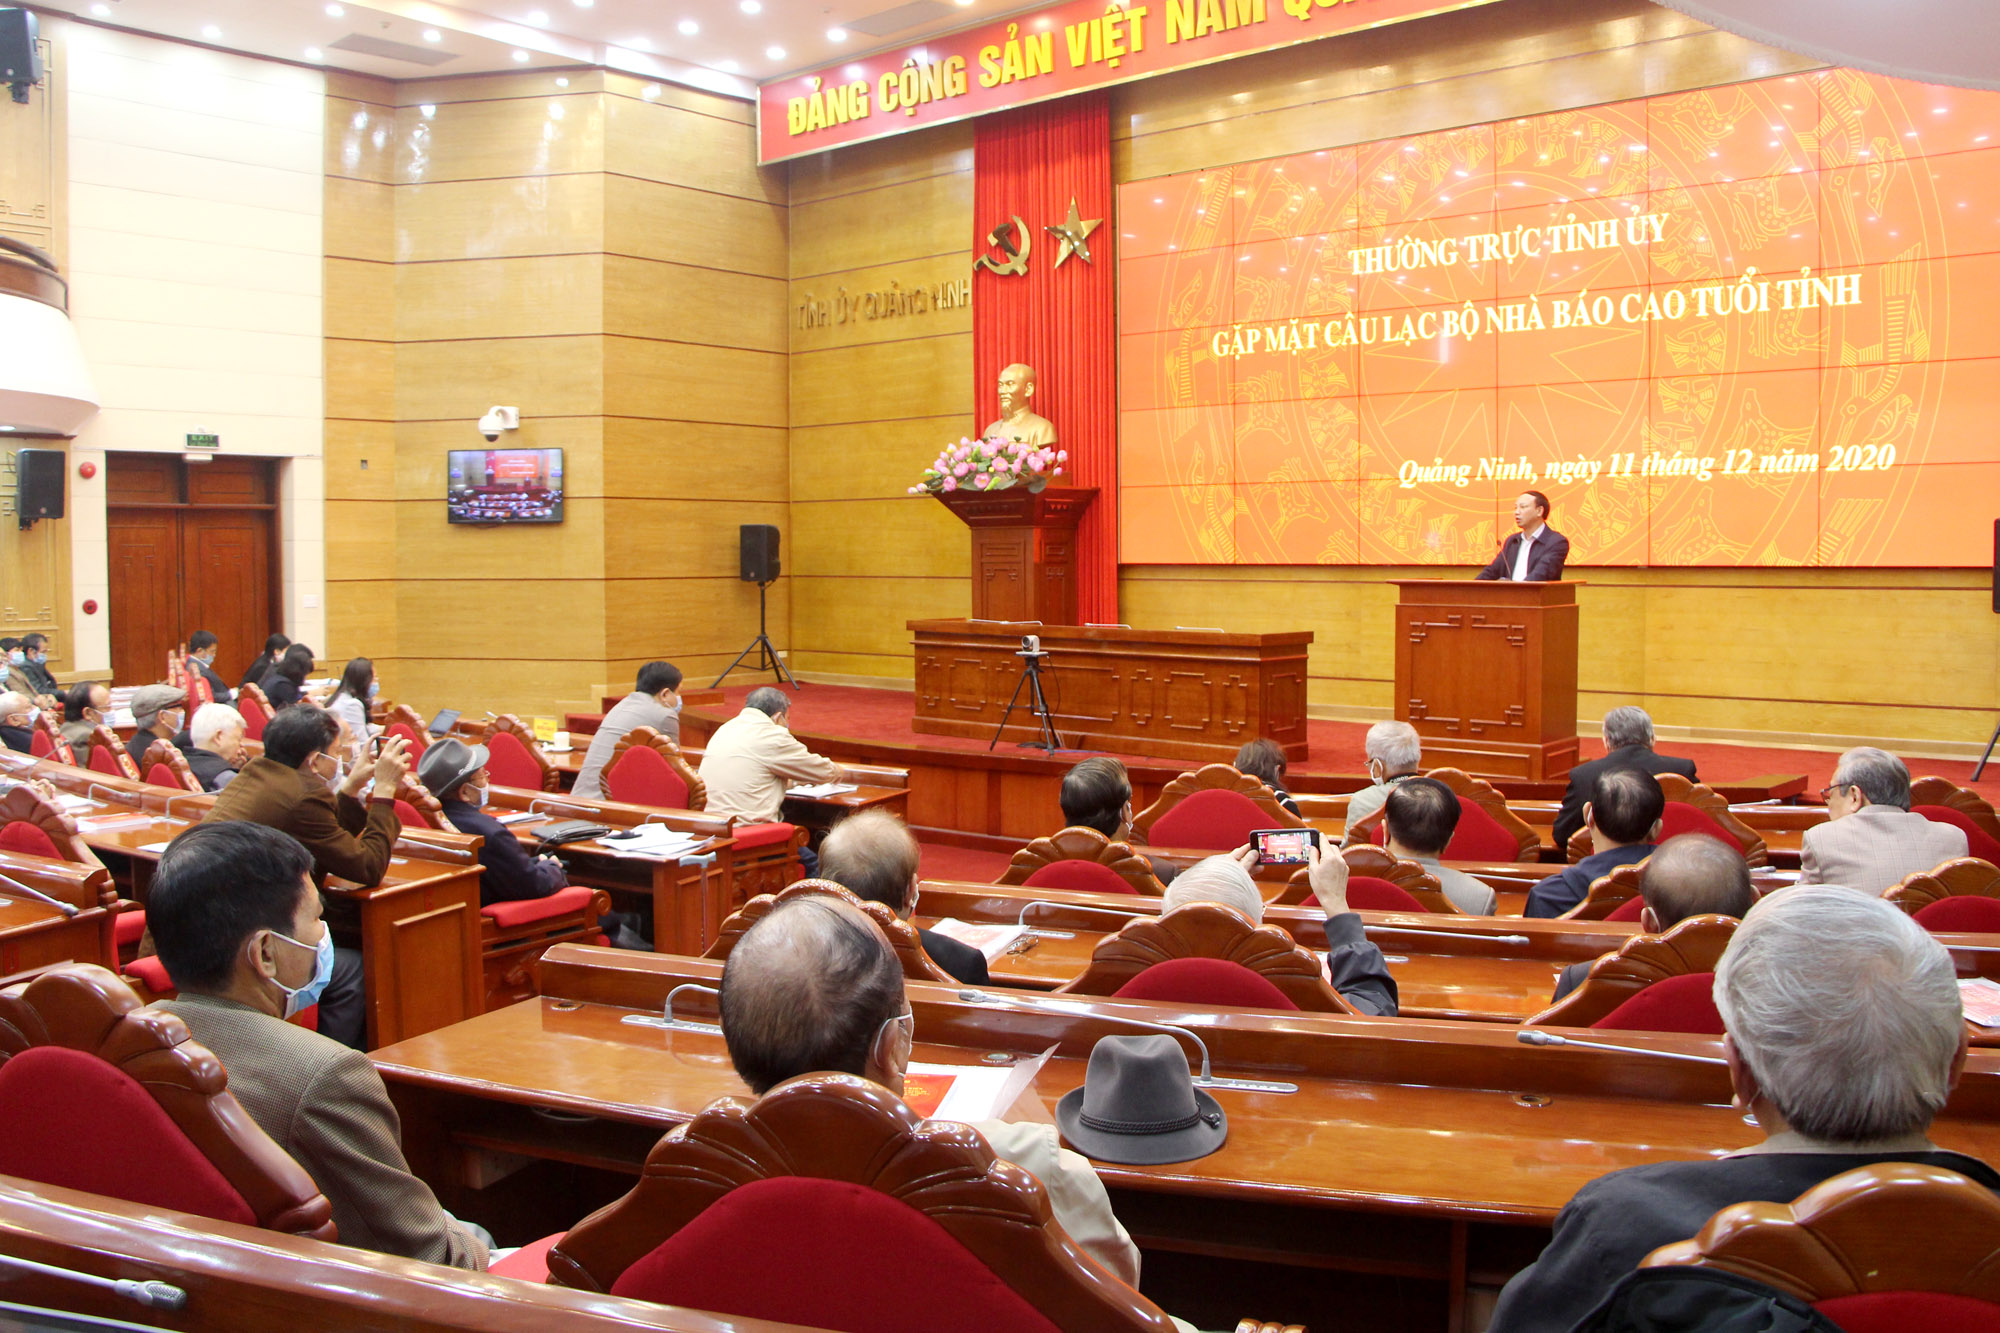 Đồng chí Nguyễn Xuân Ký, Bí thư Tỉnh ủy, Chủ tịch HĐND tỉnh phát biểu tại buổi gặp mặt nhà báo cao tuổi của tỉnh.